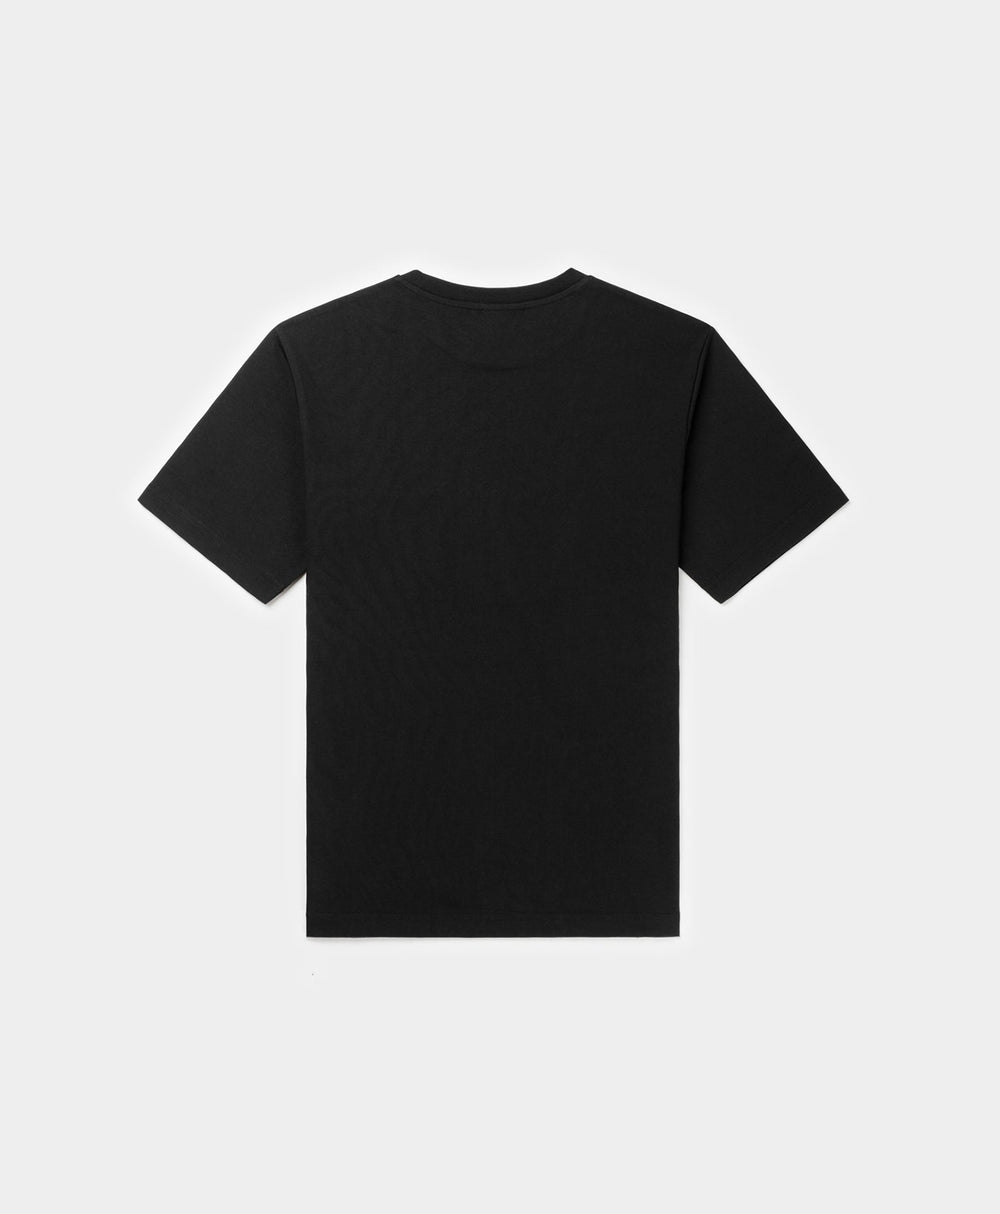 DP - Black Alias T-Shirt - Packshot - Rear